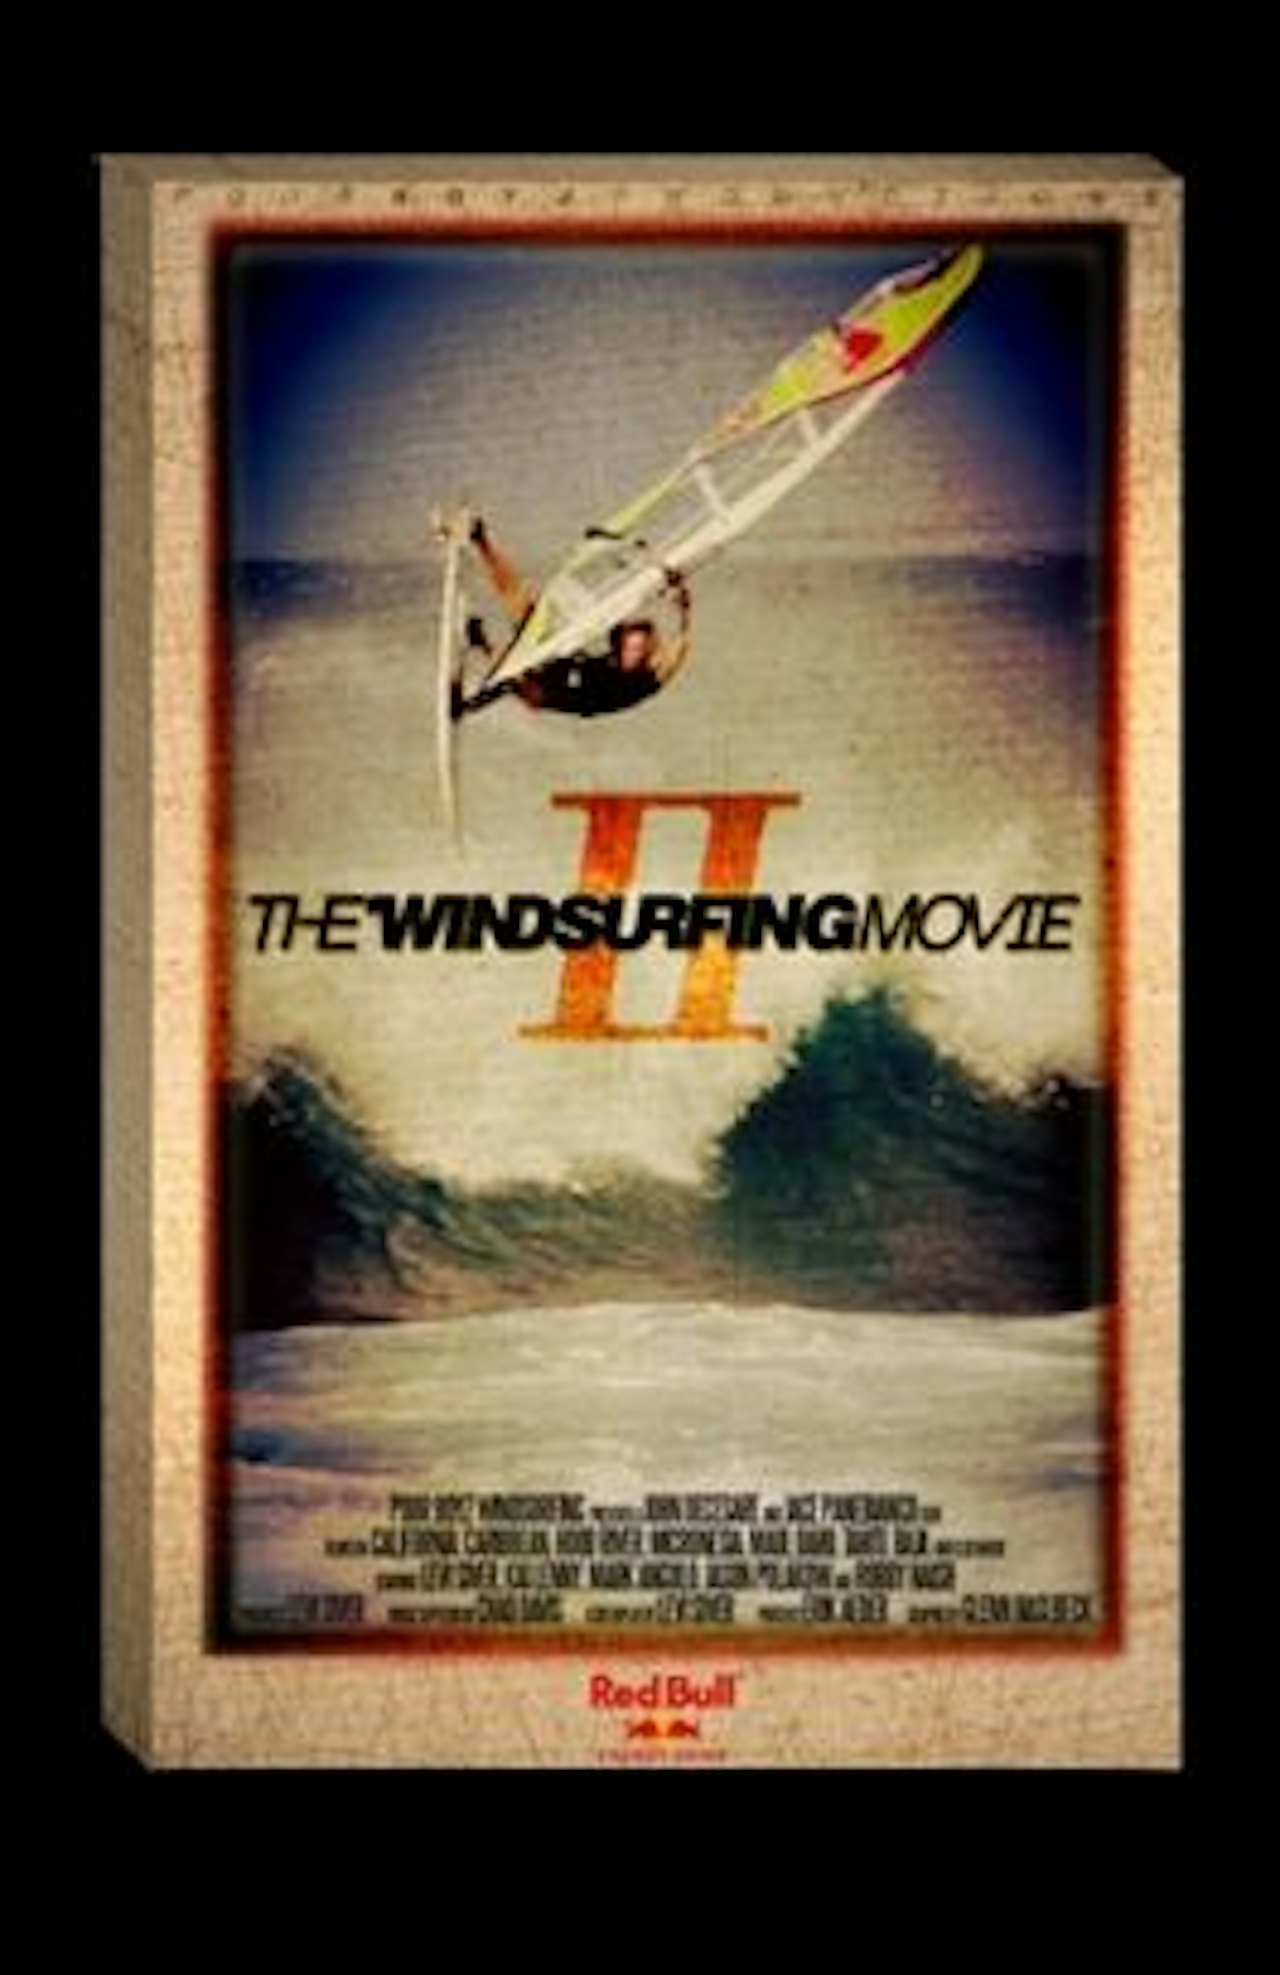 OPPFØLGEREN: Poor Boyz presenterer The Windsurfing Movie II